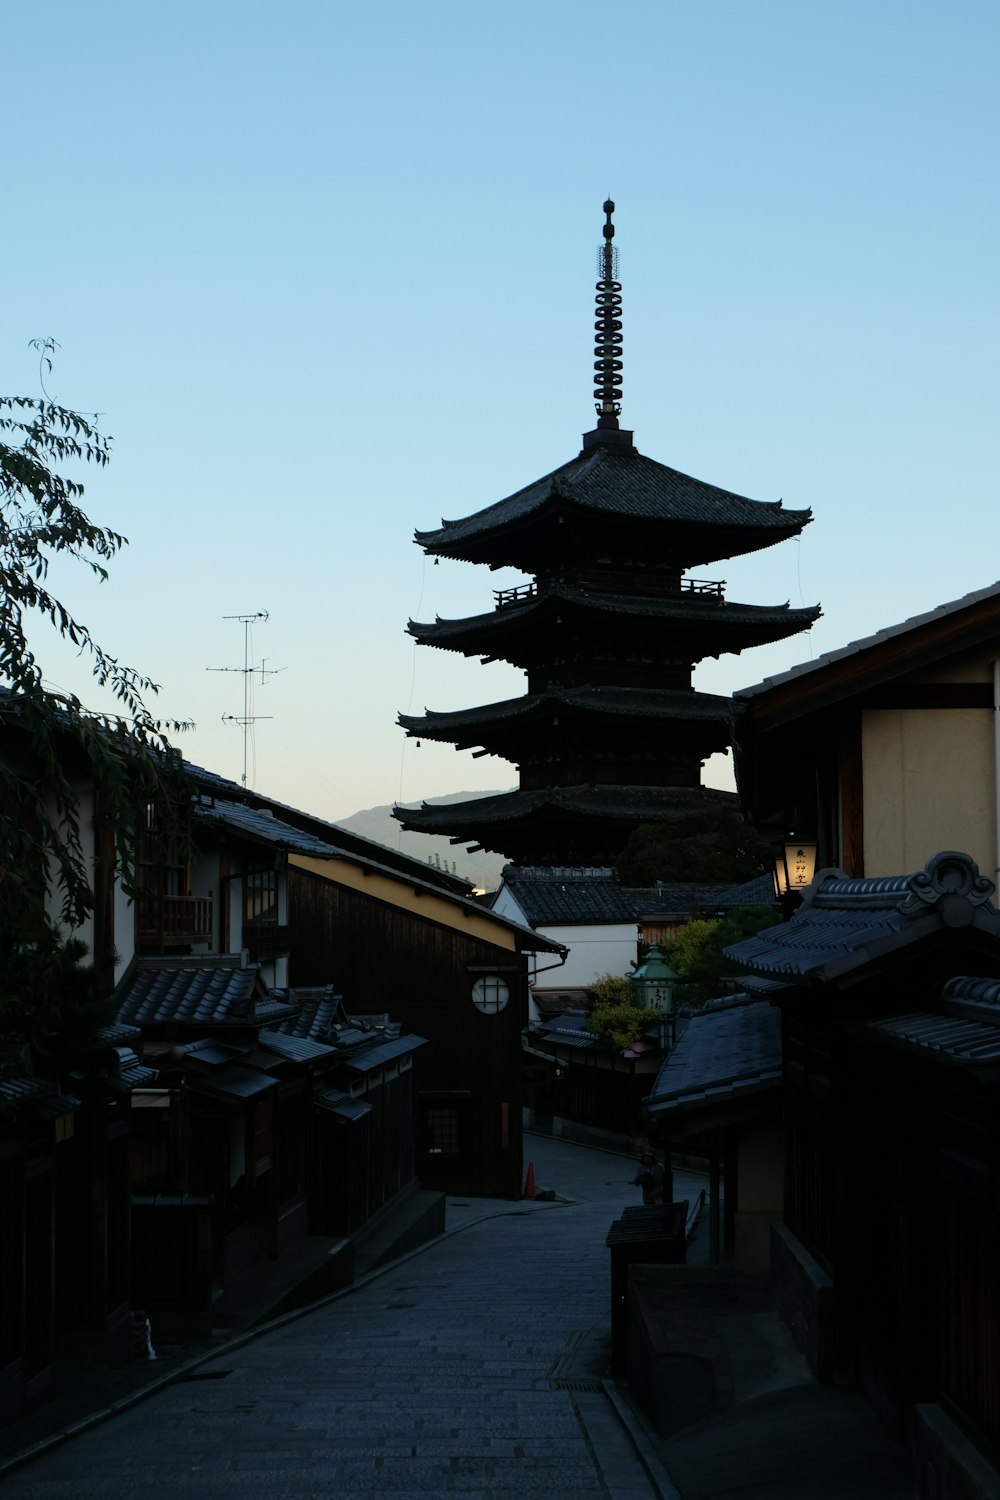 una alta torre de pagoda que se eleva sobre una ciudad